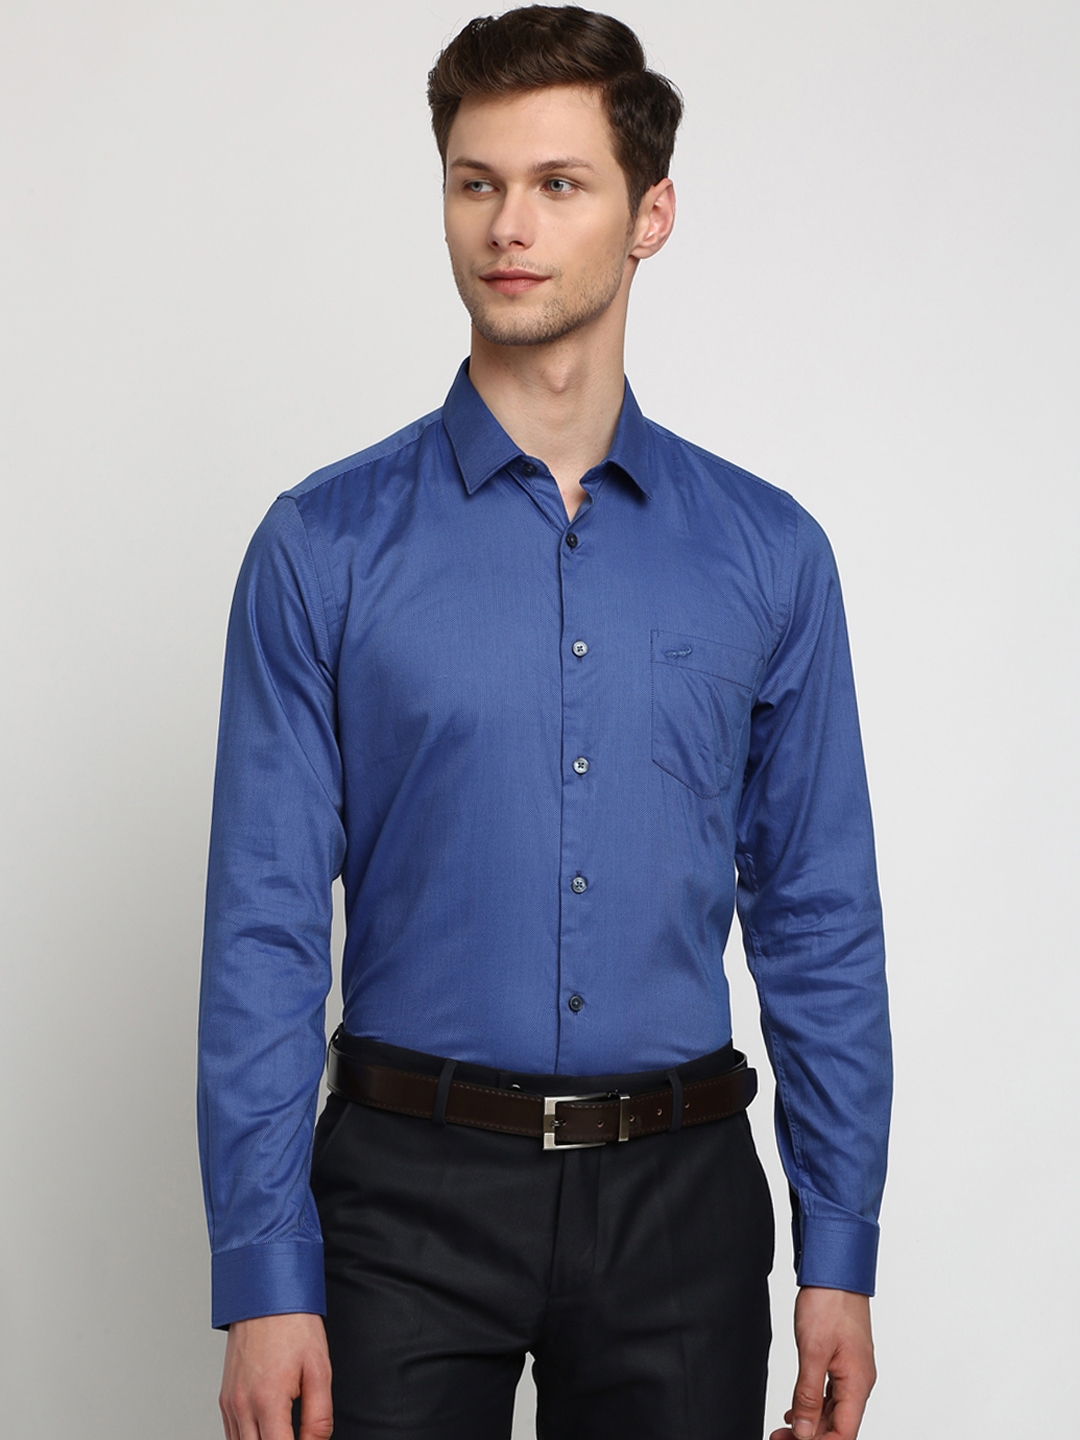 Buy Crocodile Men Blue Slim Fit Solid Formal Shirt - Shirts for Men ...